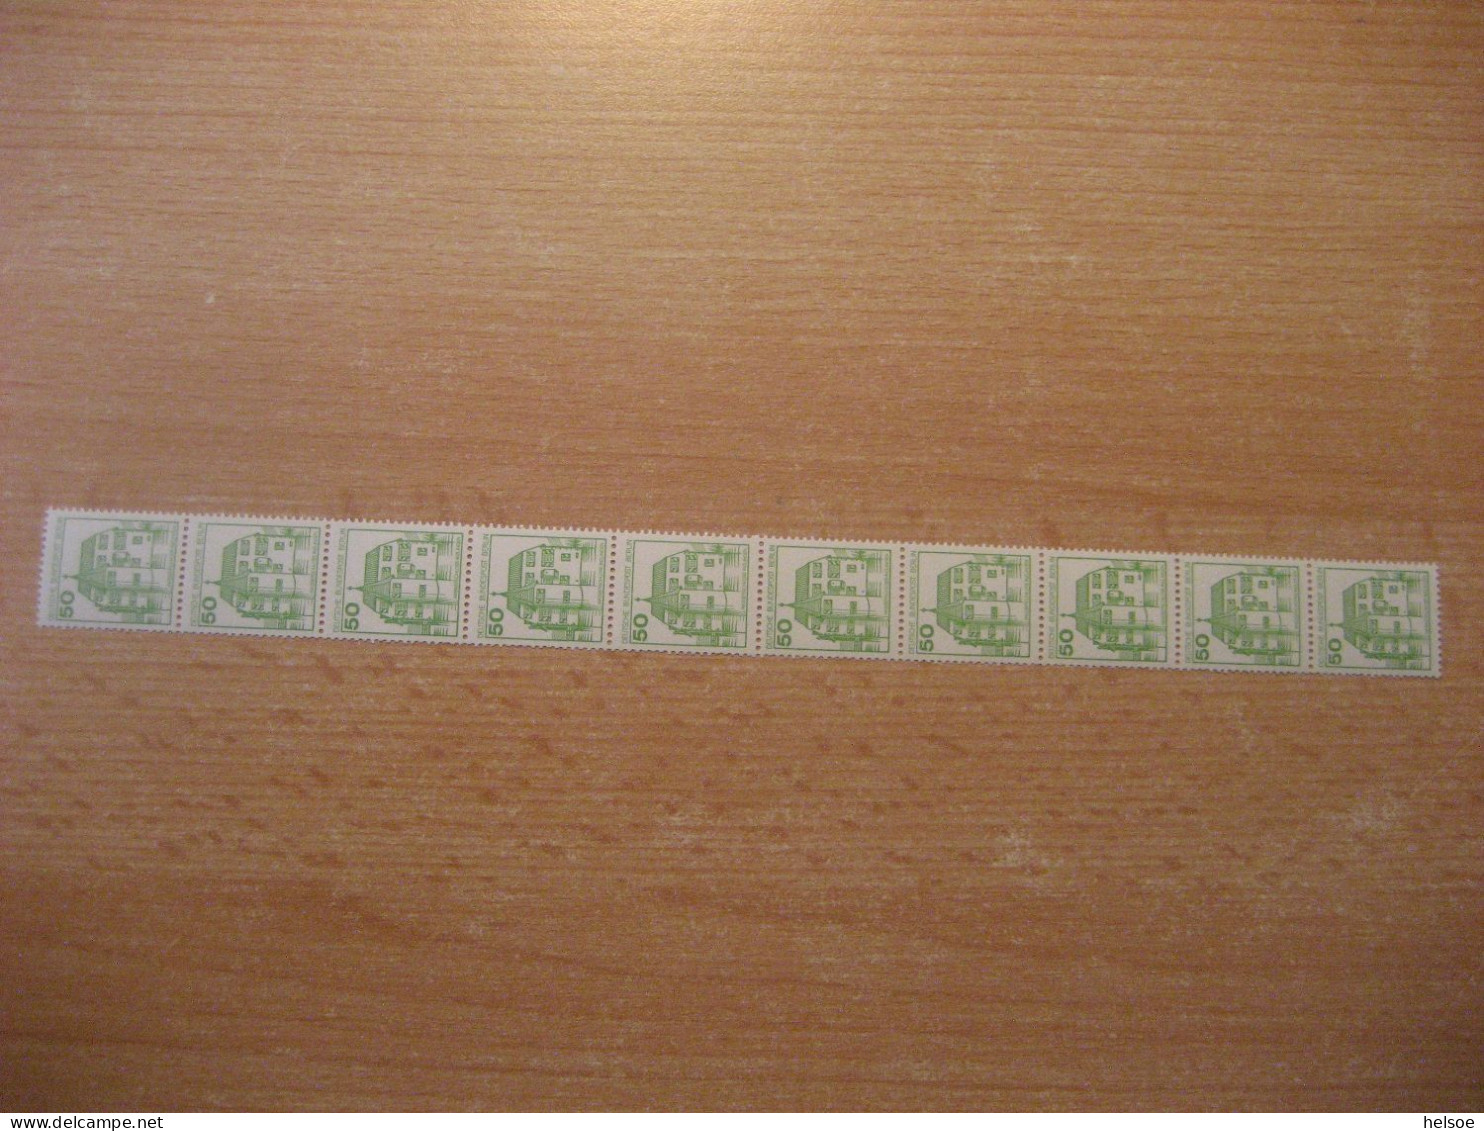 Deutschland Westberlin 1980- Rollenmarke 50 Pf. Rücks. Zählnummer, Mi. 537 ** Ungebraucht - Roller Precancels